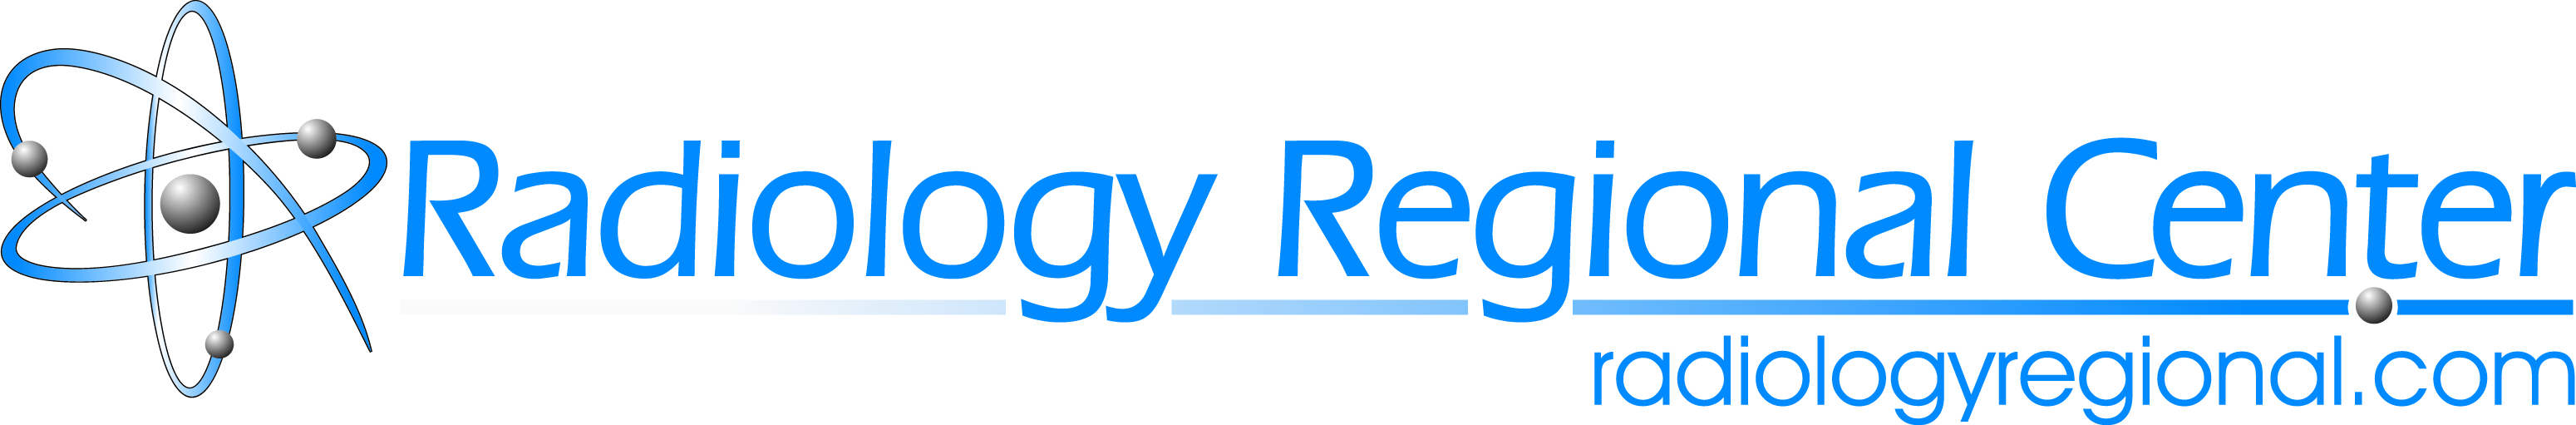 radiology_regional_center_logo